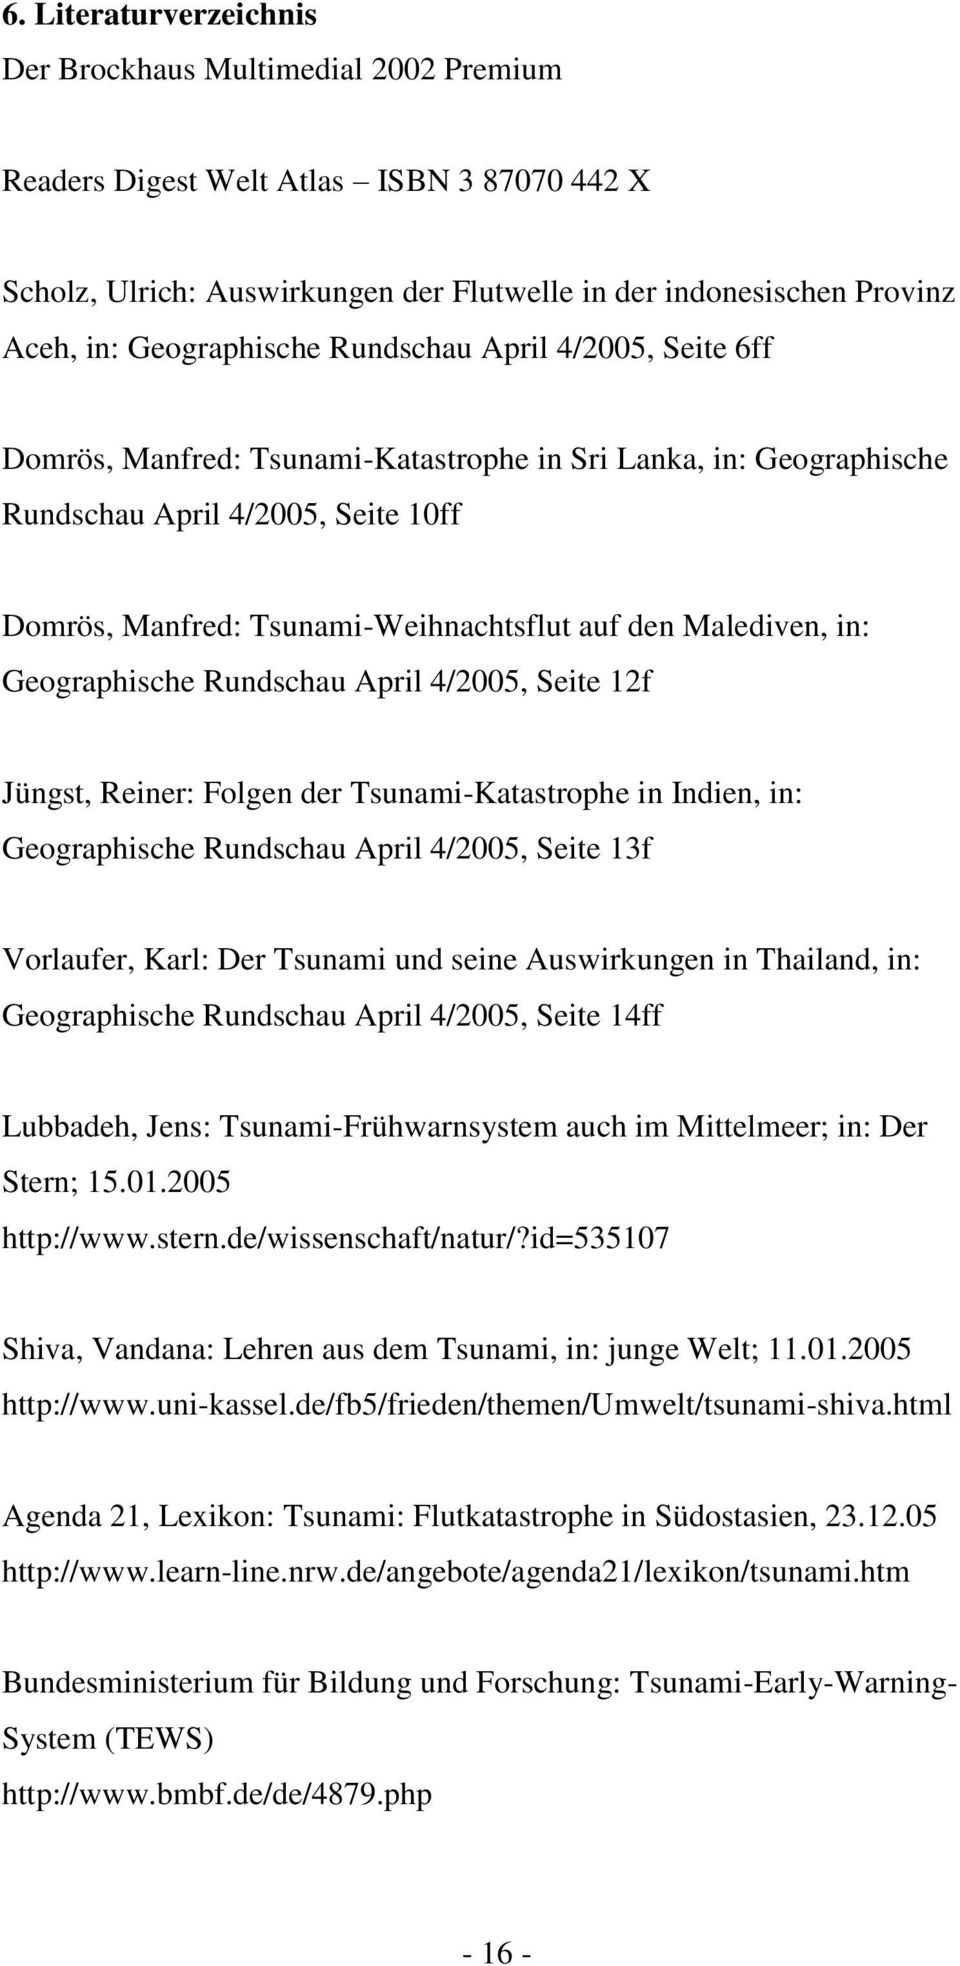 Malediven, in: Geographische Rundschau April 4/2005, Seite 12f Jüngst, Reiner: Folgen der Tsunami-Katastrophe in Indien, in: Geographische Rundschau April 4/2005, Seite 13f Vorlaufer, Karl: Der